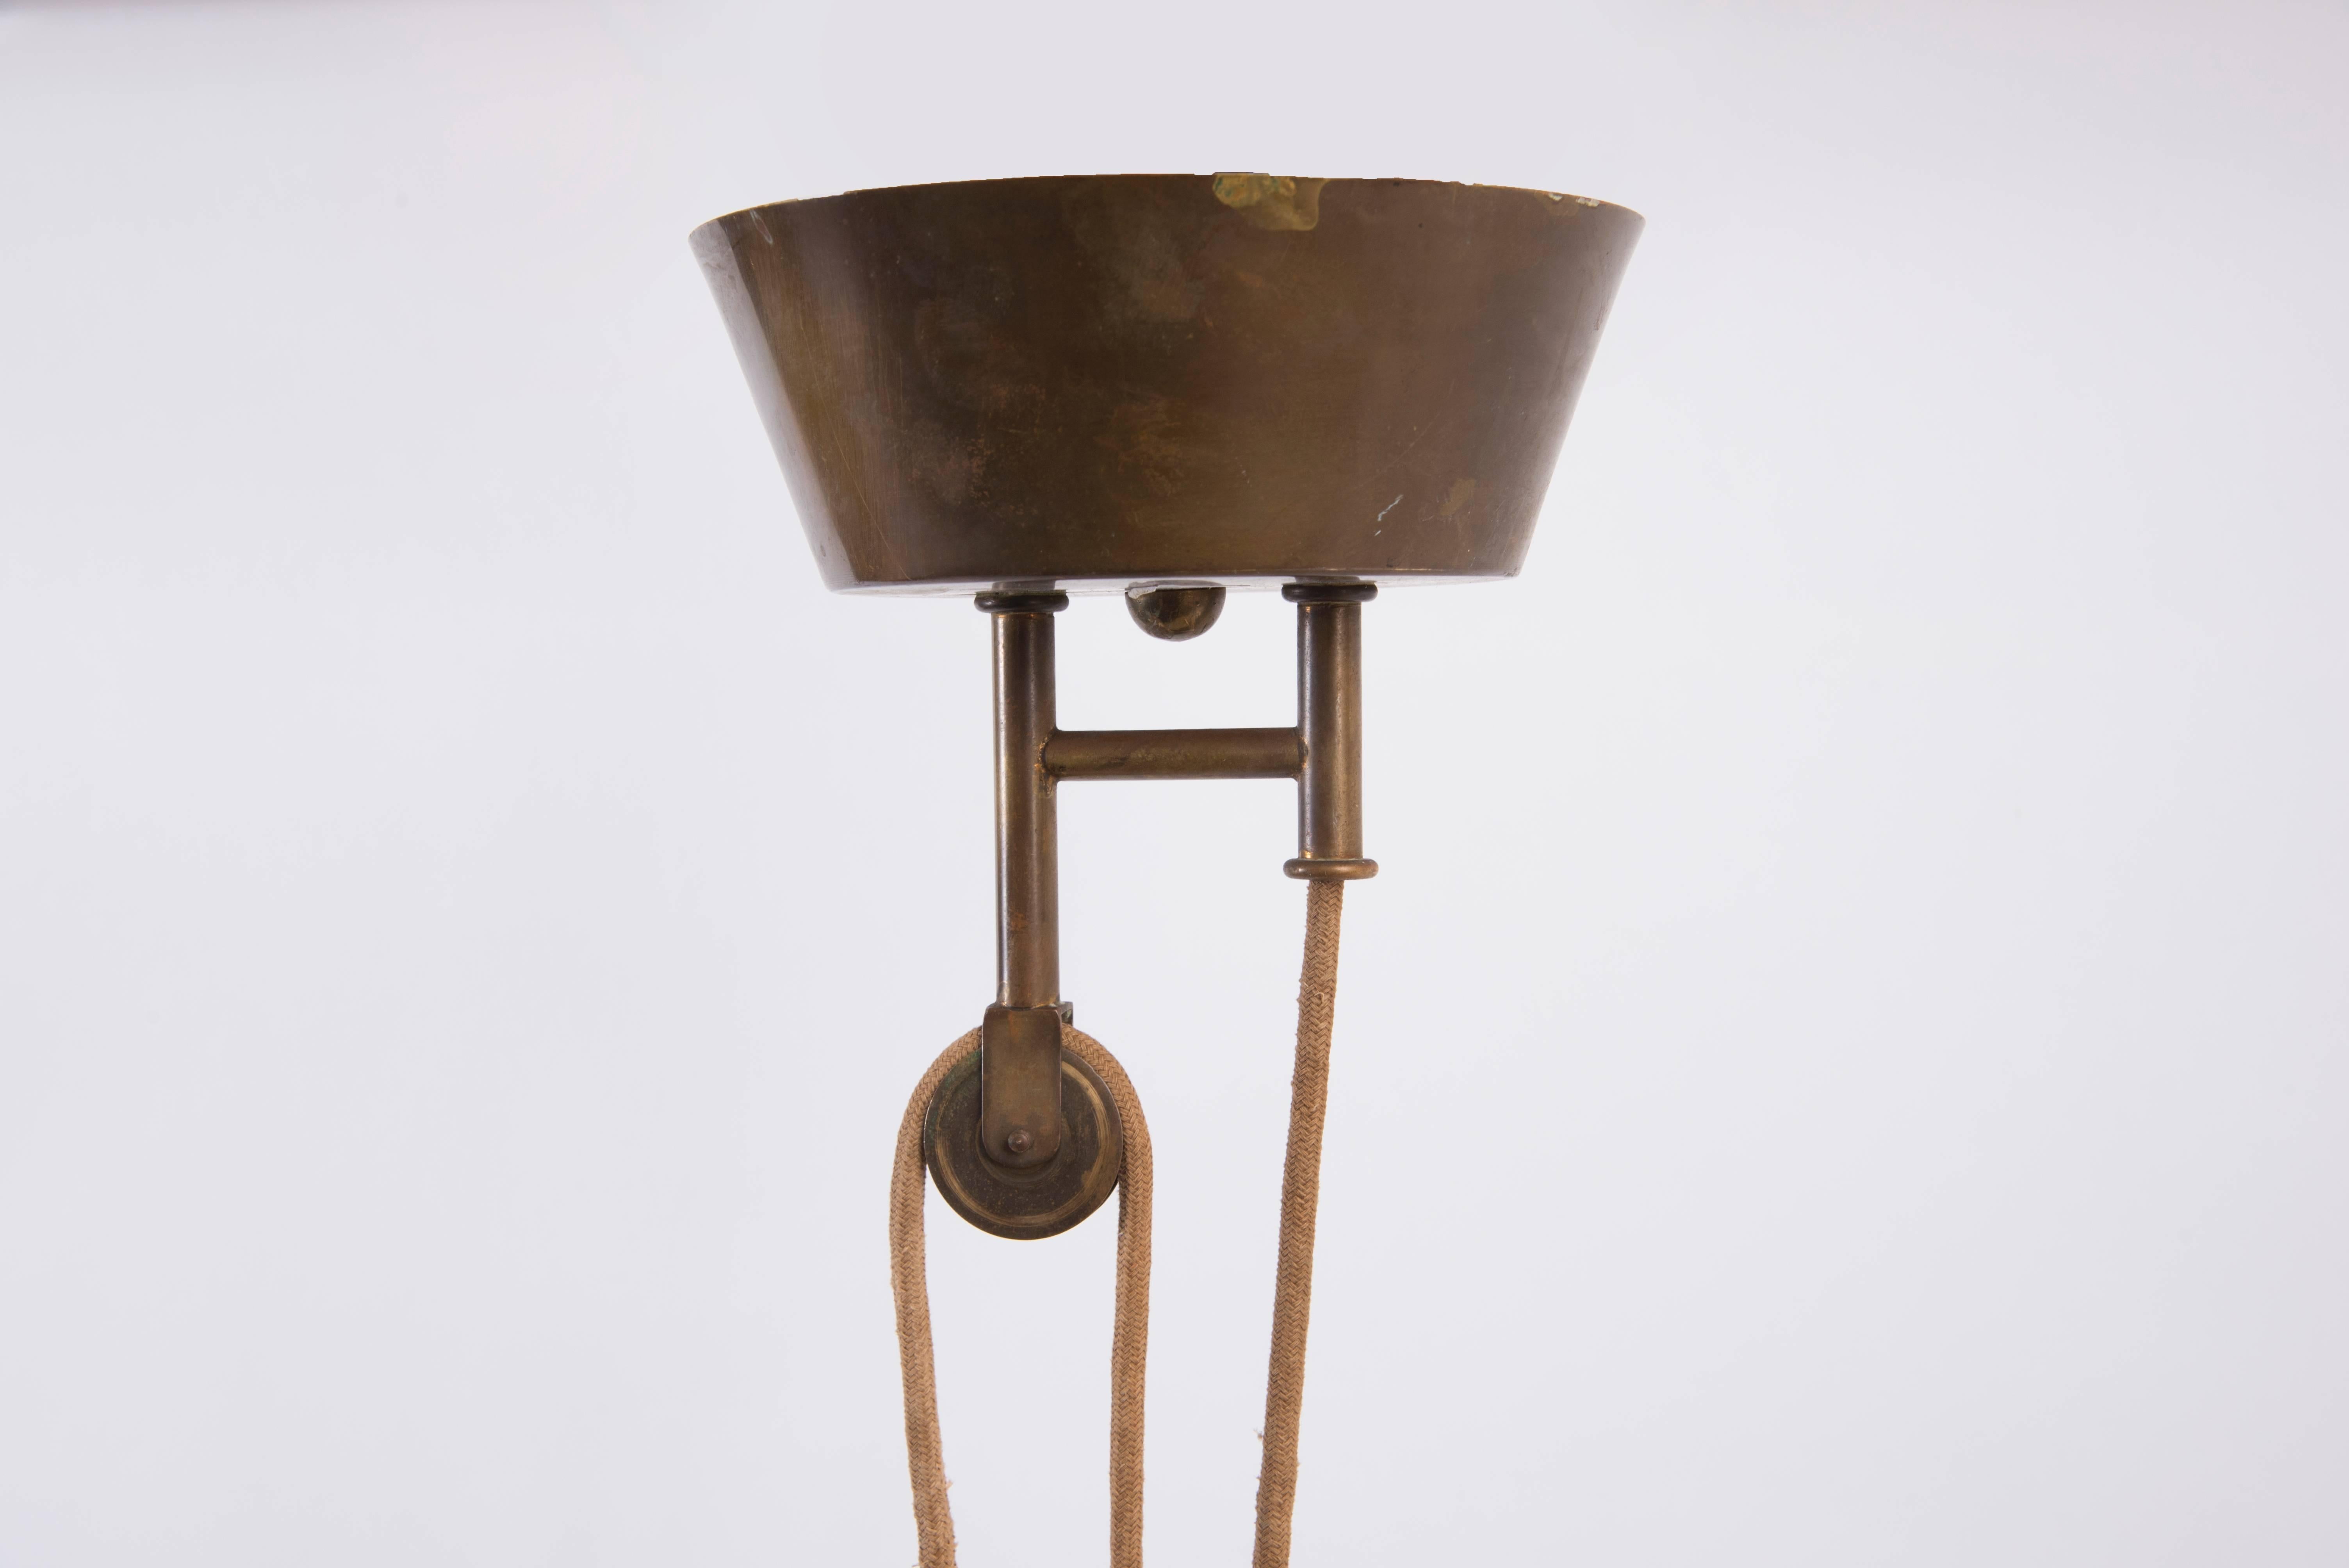 Stilnovo, sliding hanging lamp,
original Stilnovo label,
brass, lacquered aluminium,
circa 1950, Italy.
Measures: Height: 290 cm or 130 cm, diameter: 65 cm.